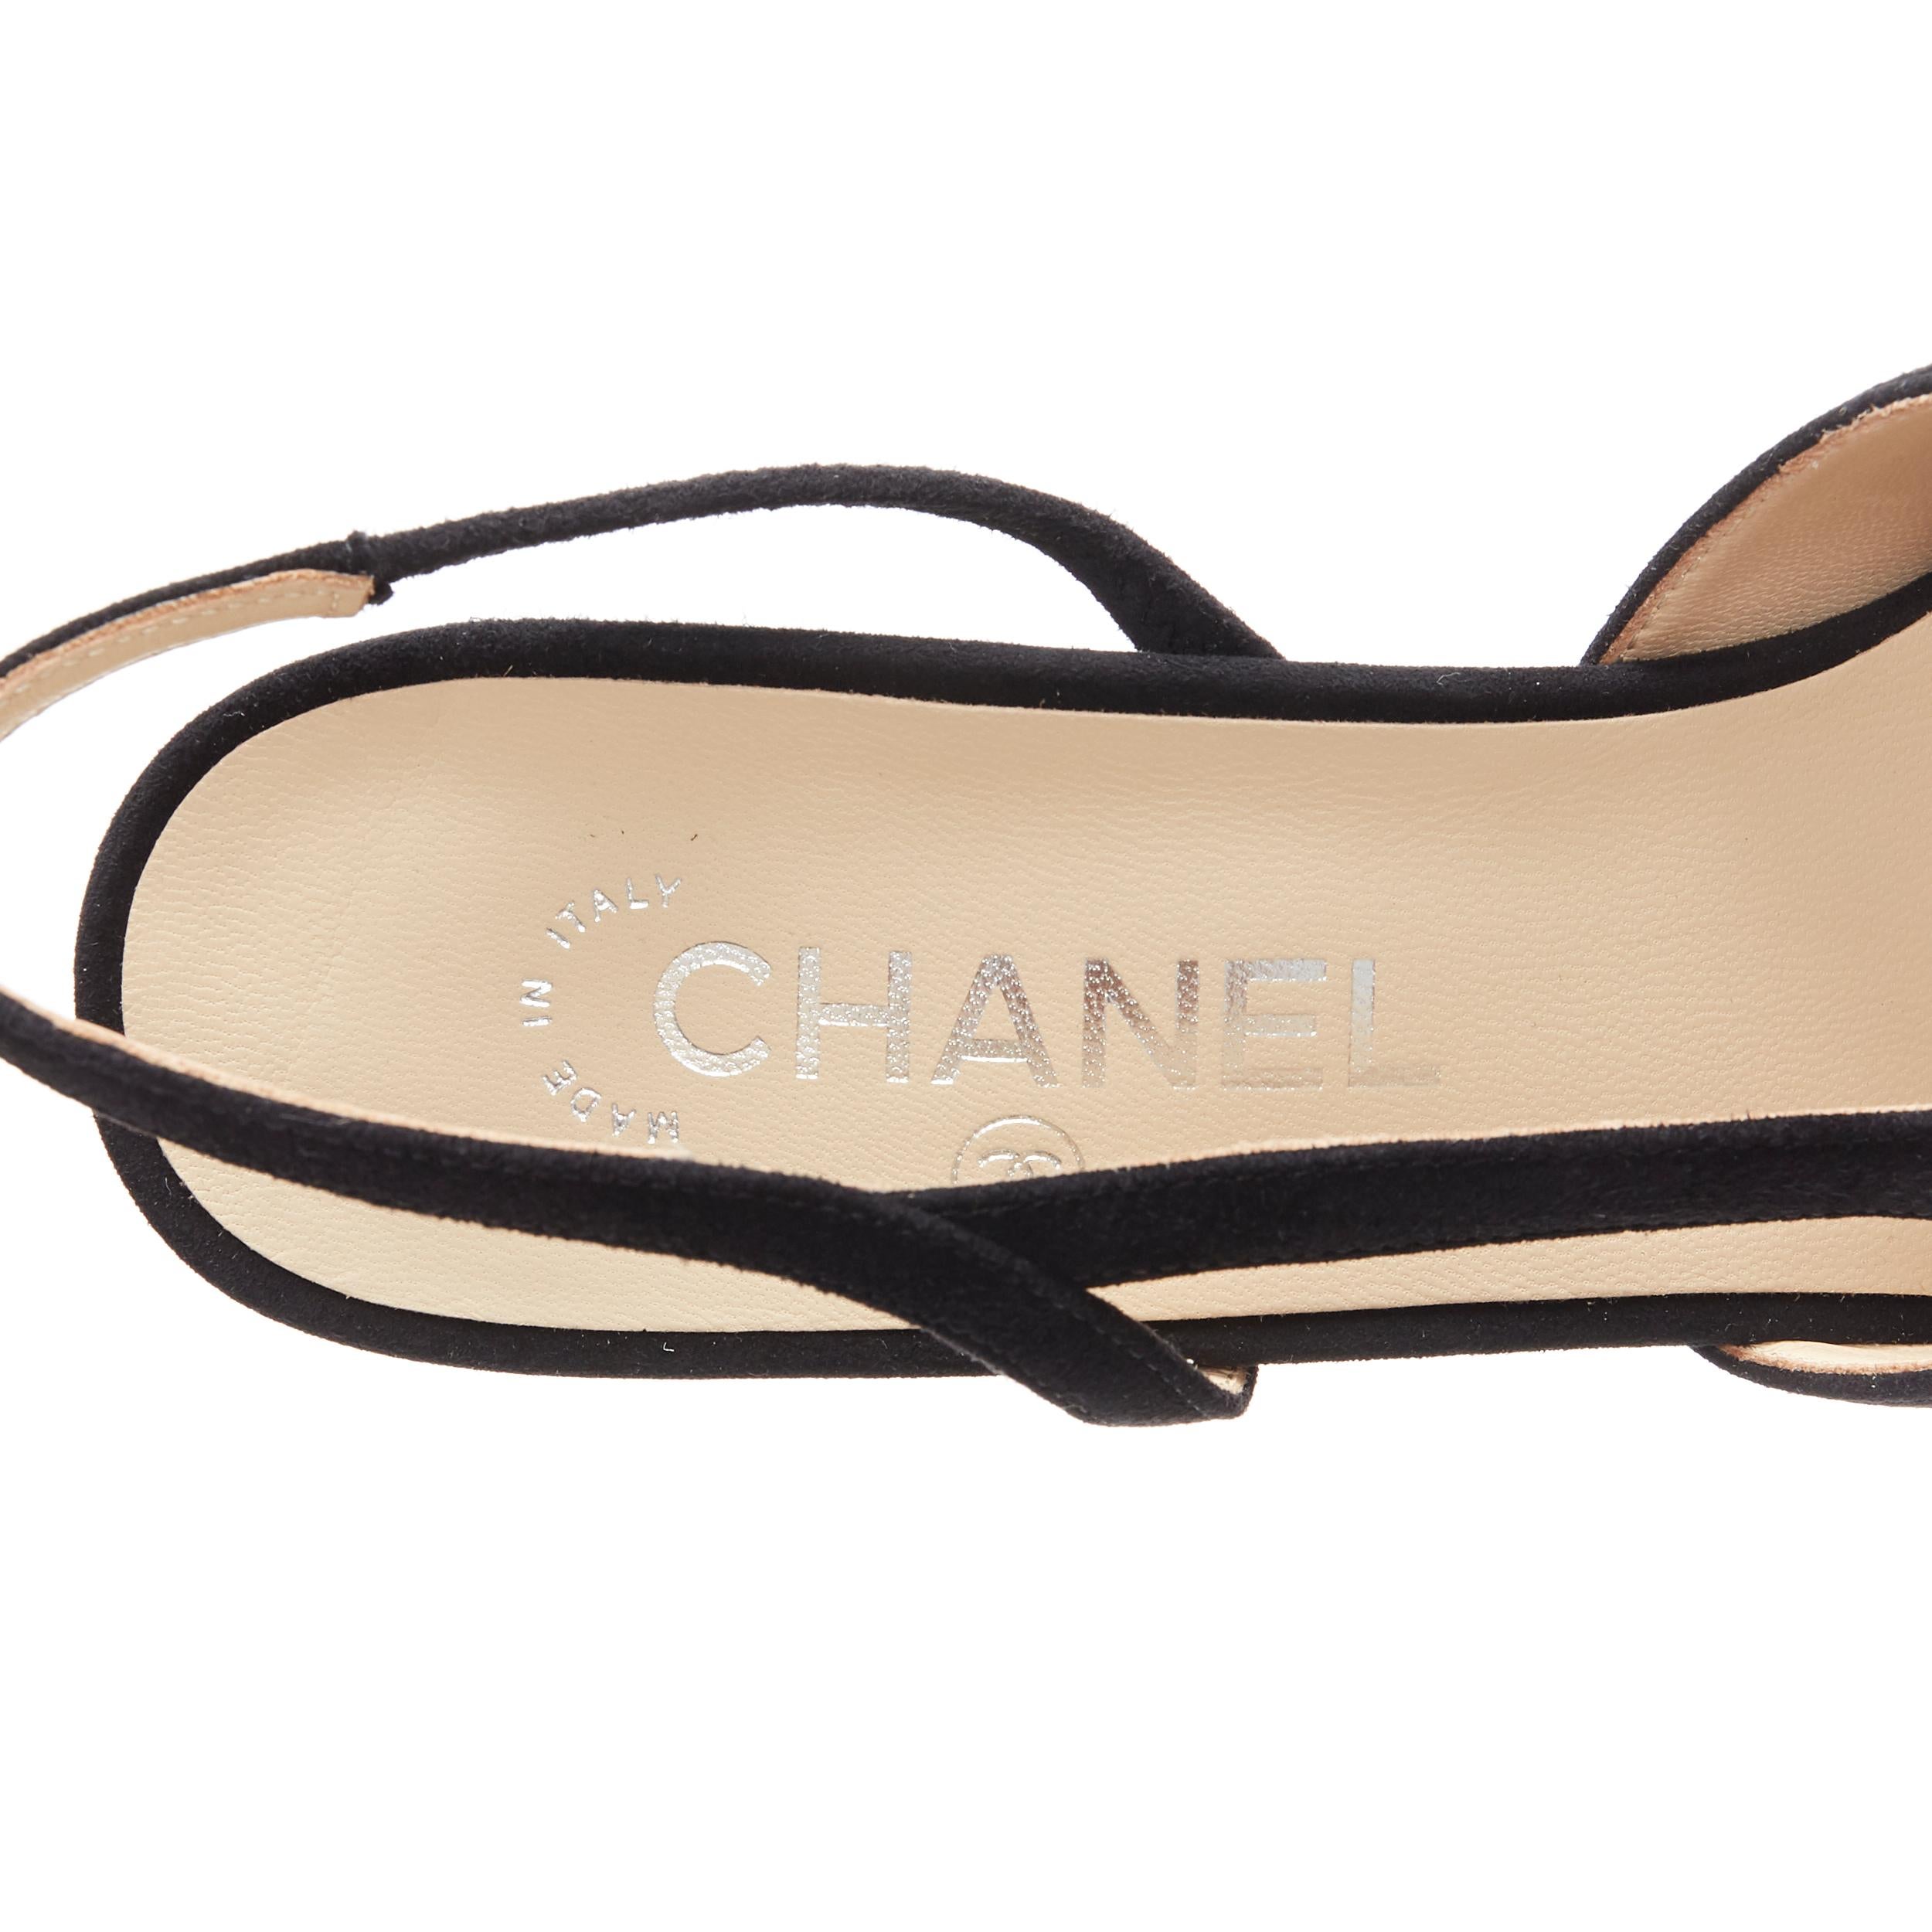 new CHANEL black suede silver toe cap CC logo mid block heel slingback pump EU39 3